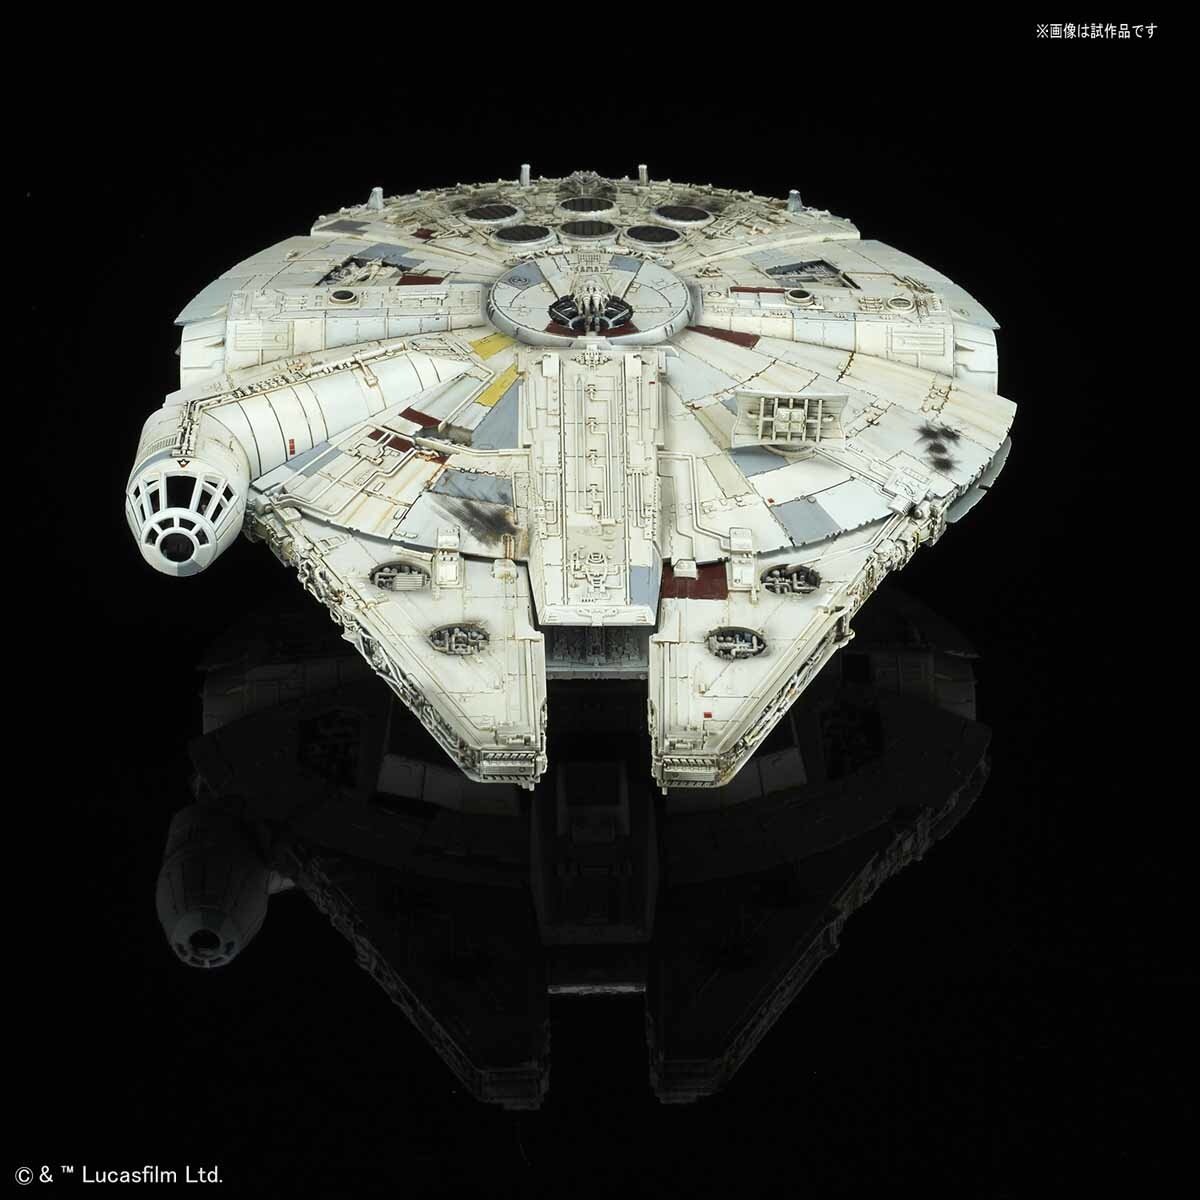 Star Wars: The Last Jedi 1/144 Scale Millennium Falcon